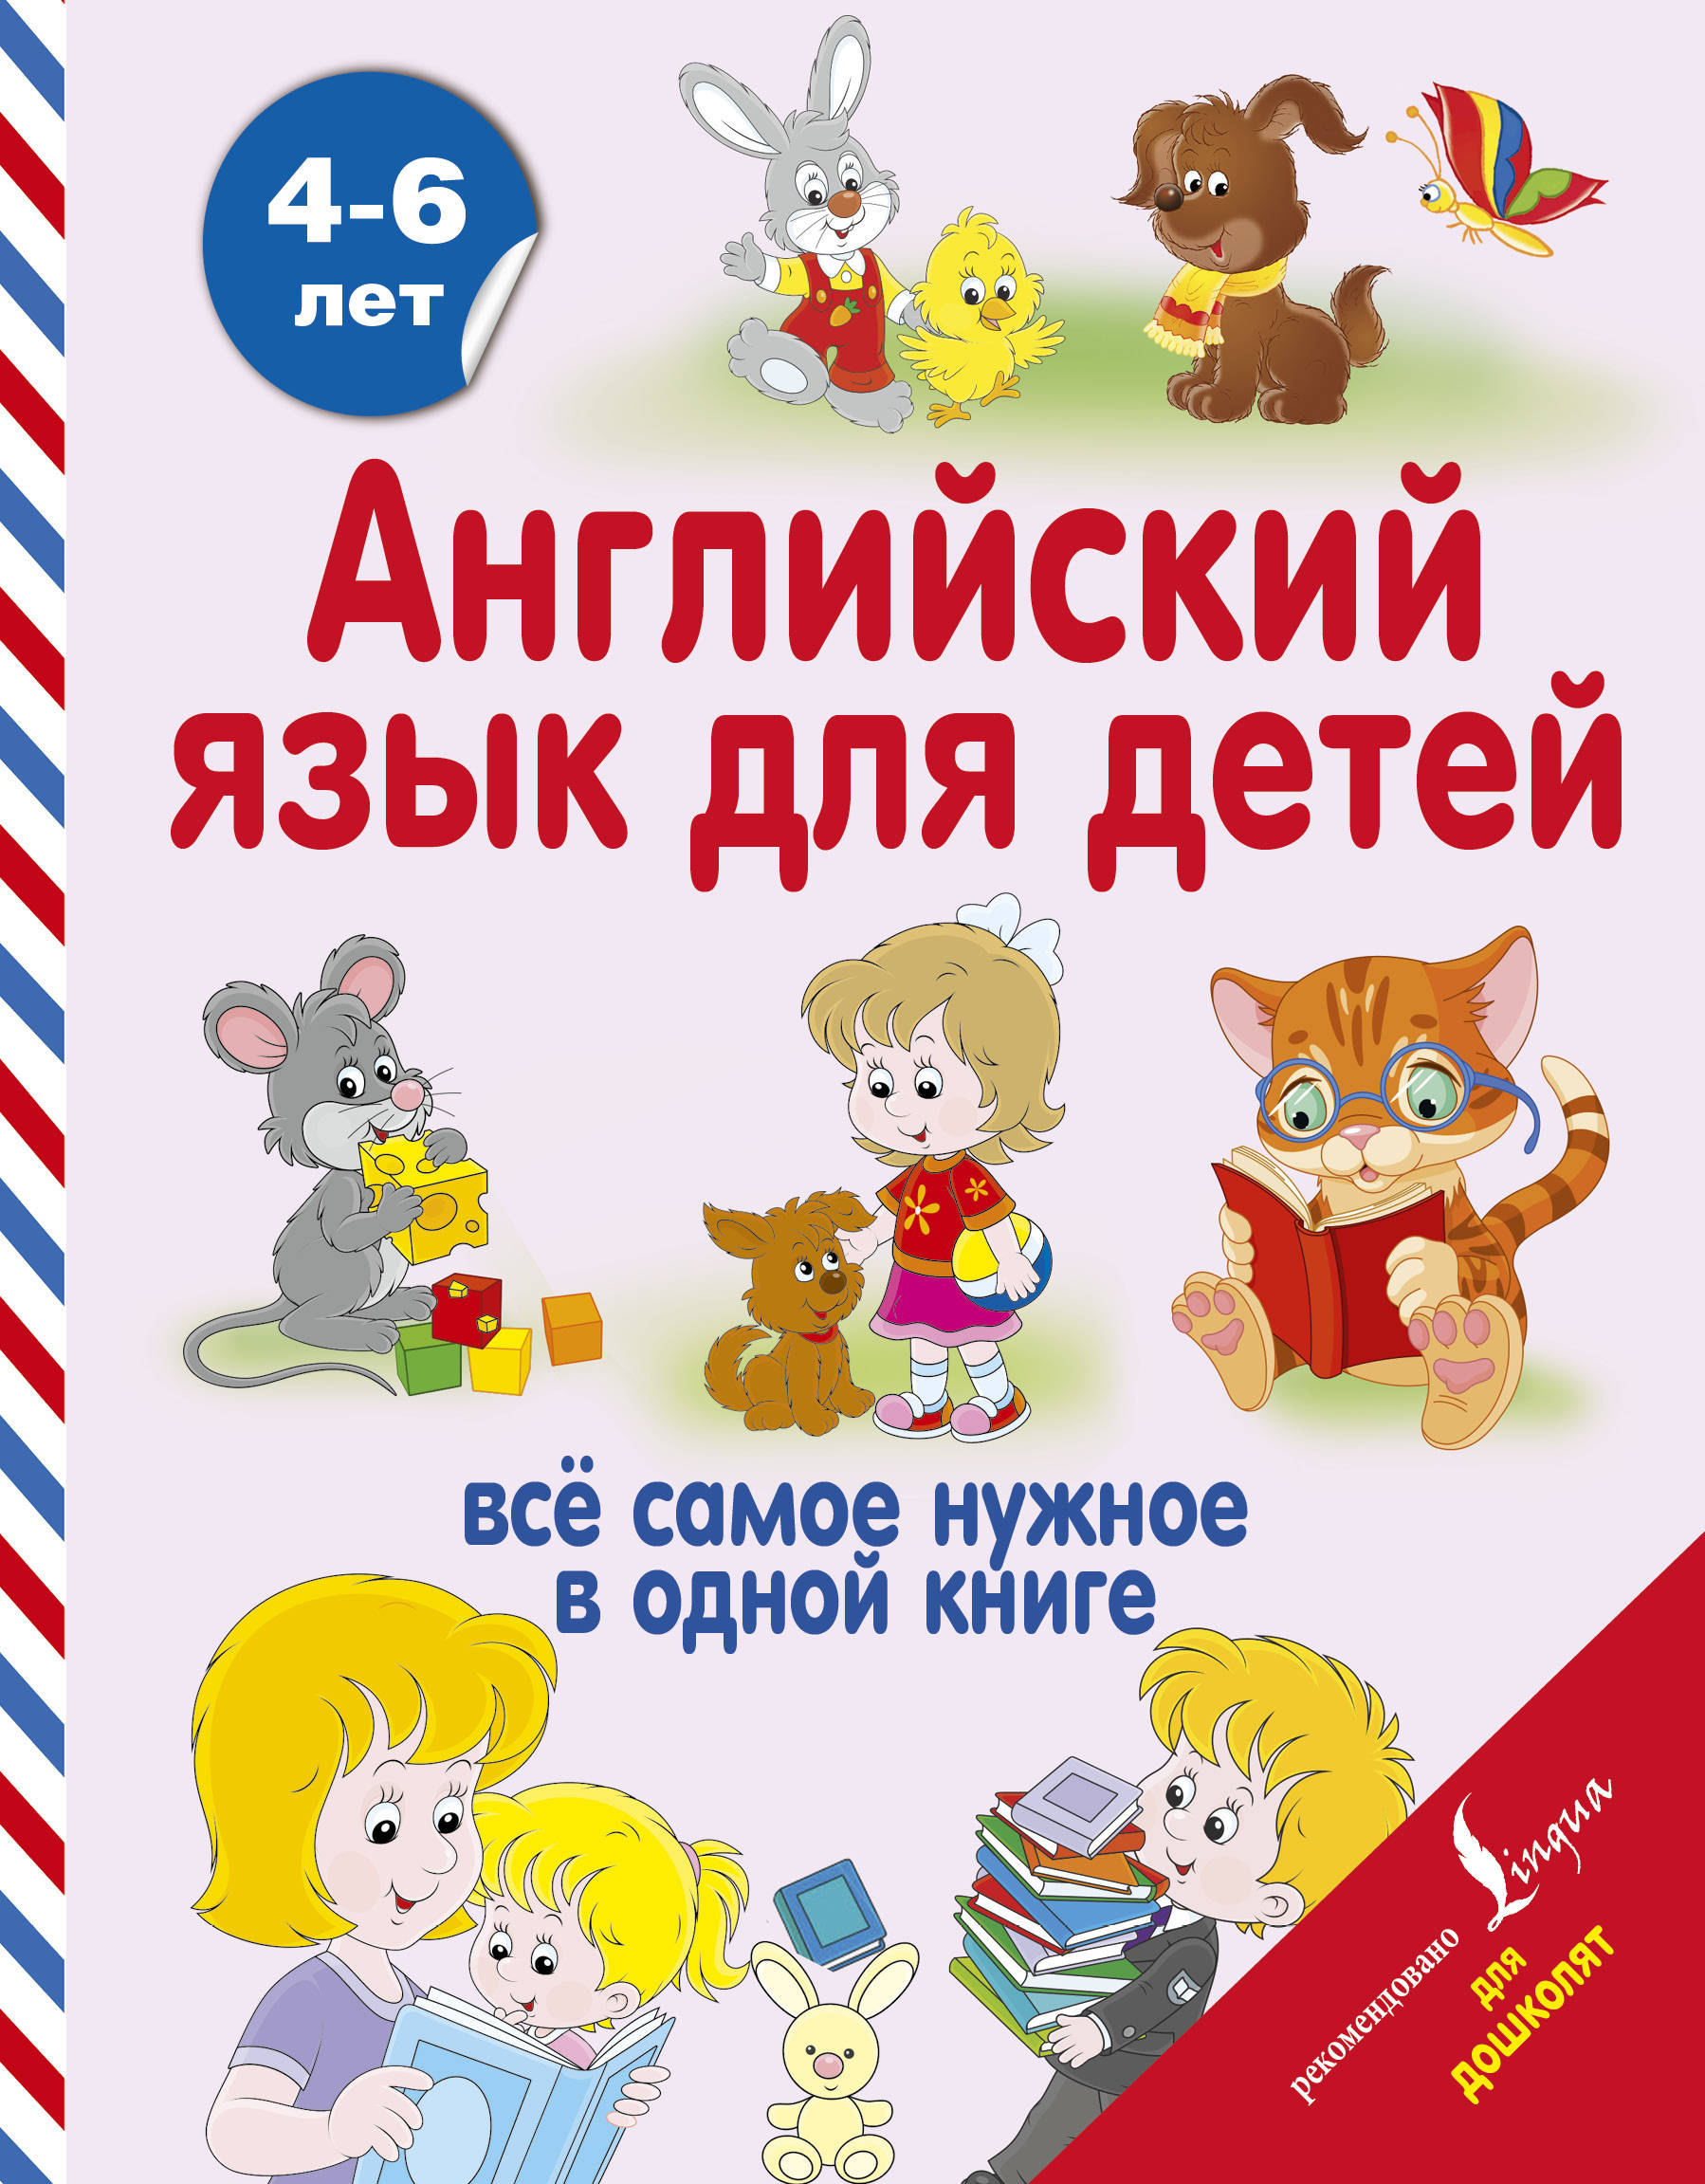 Книга для детей обучение английский фото